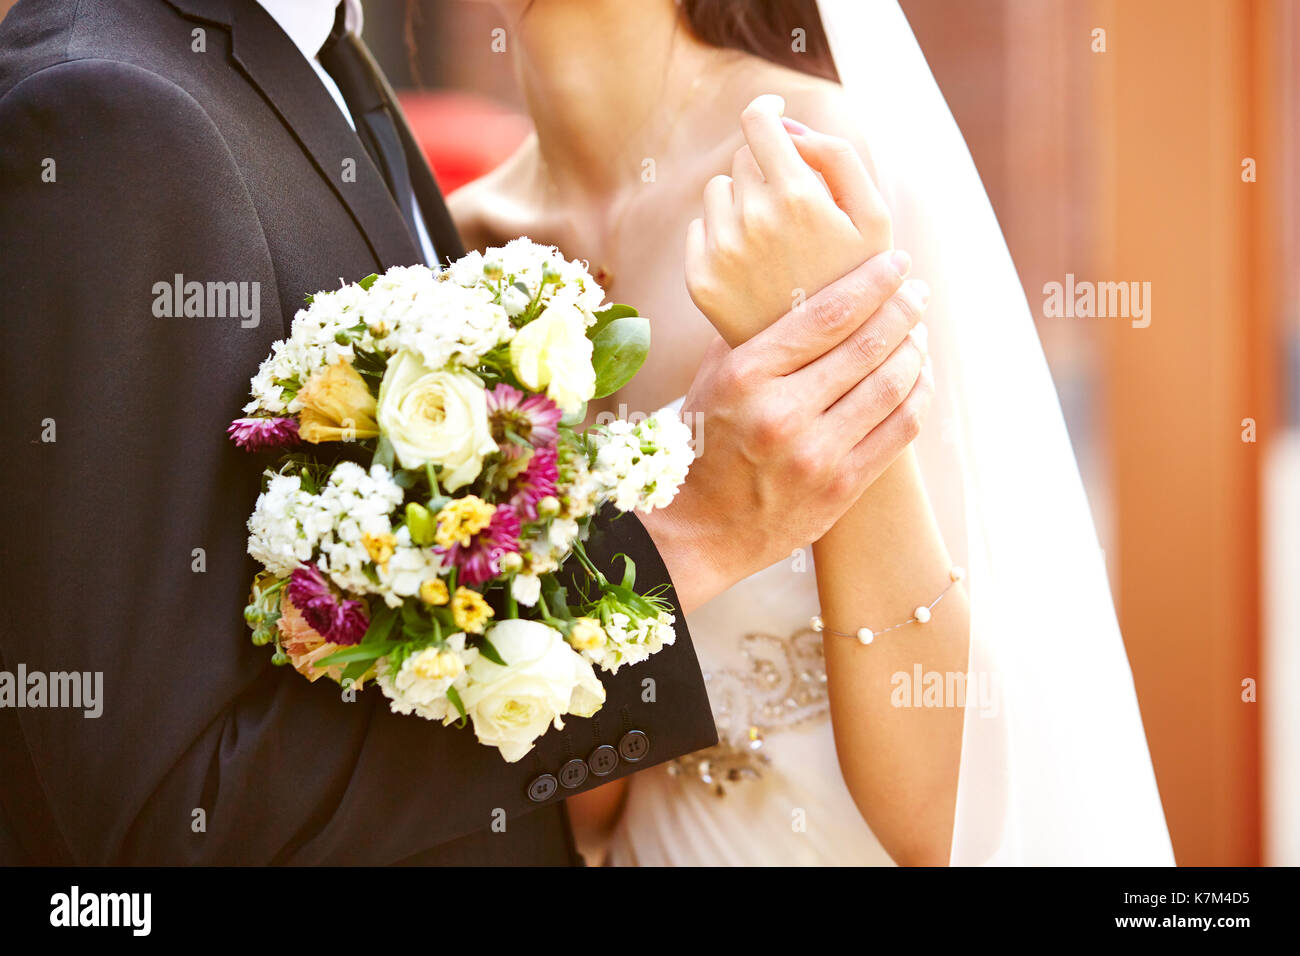 Amante de la novia y el novio con bouquet abrazarse mutuamente en el día de la boda Foto de stock